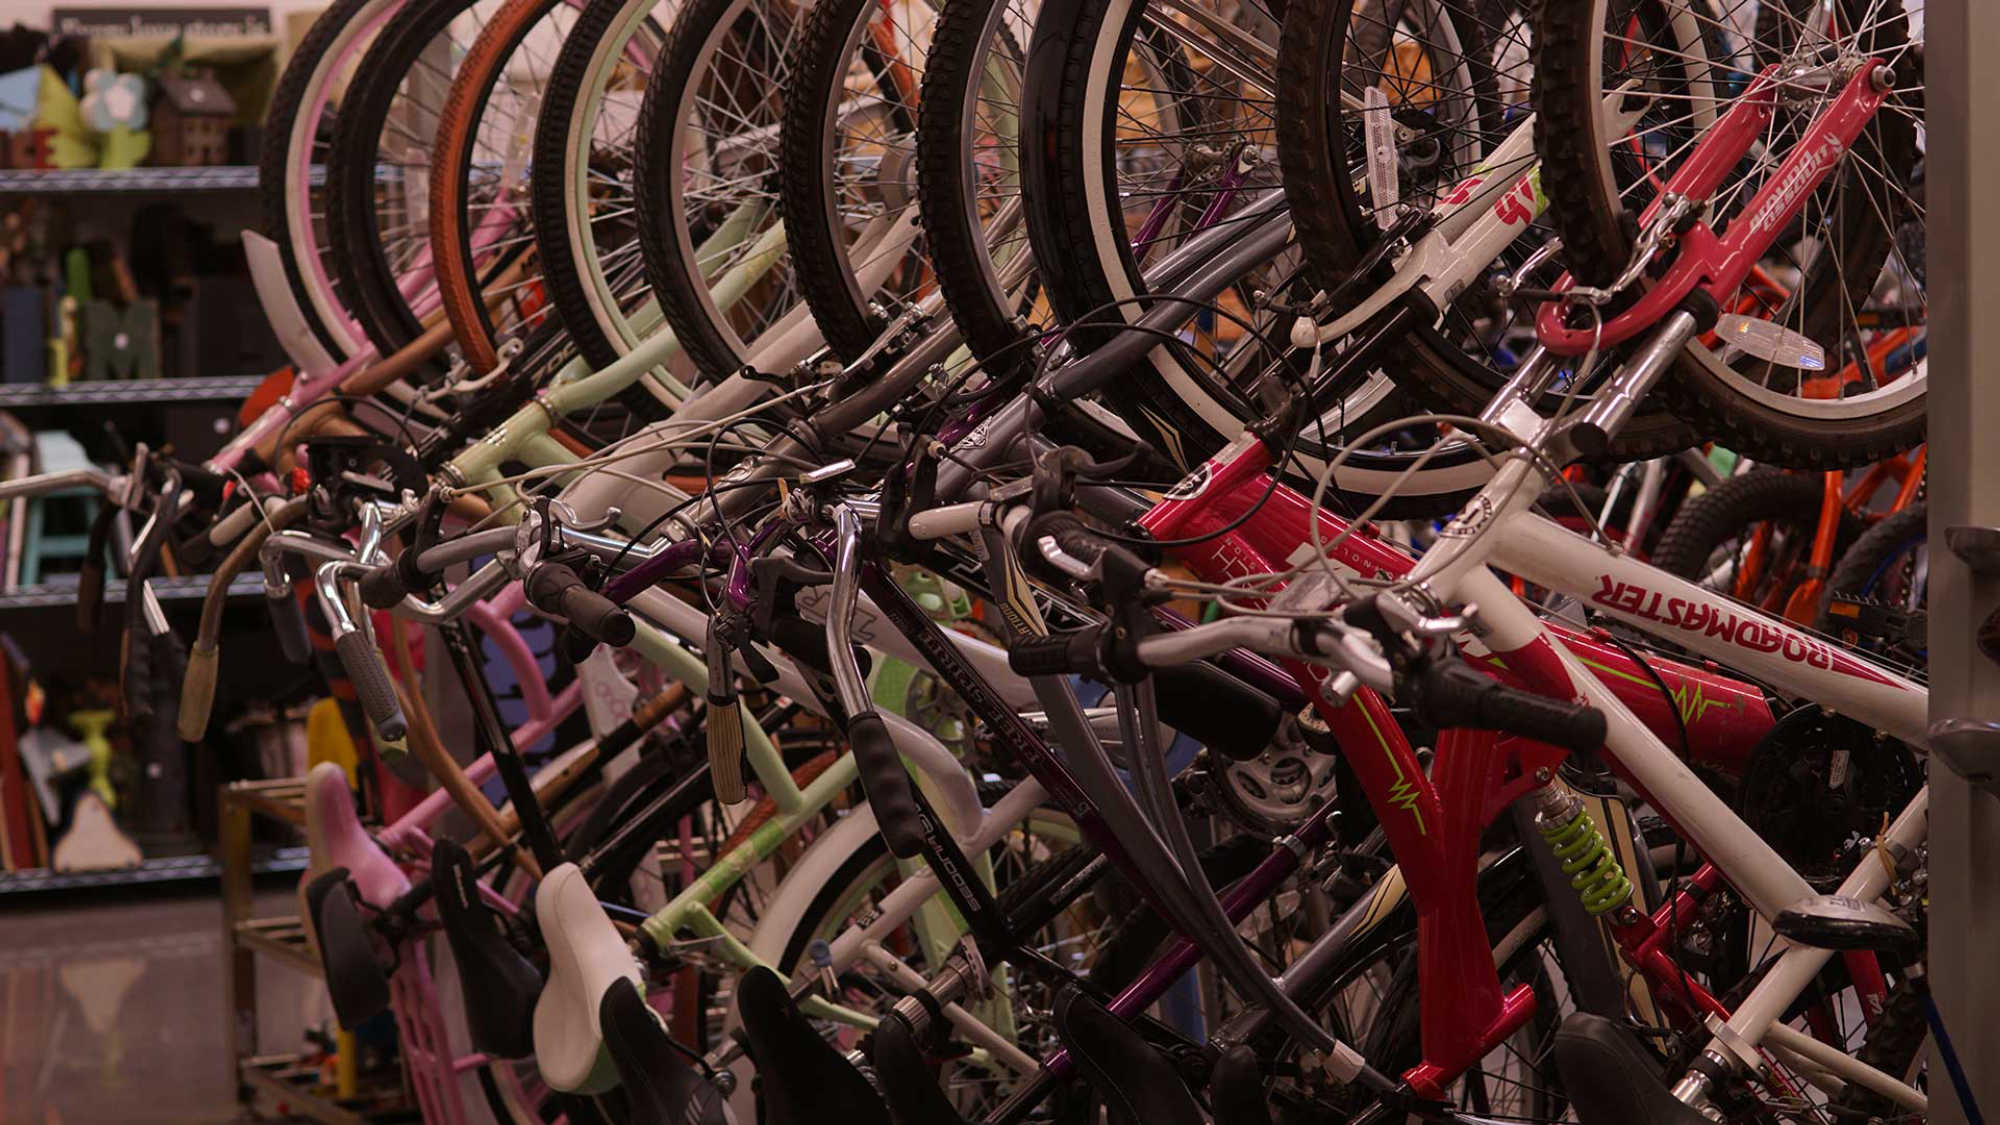 A rack of bikes at DI